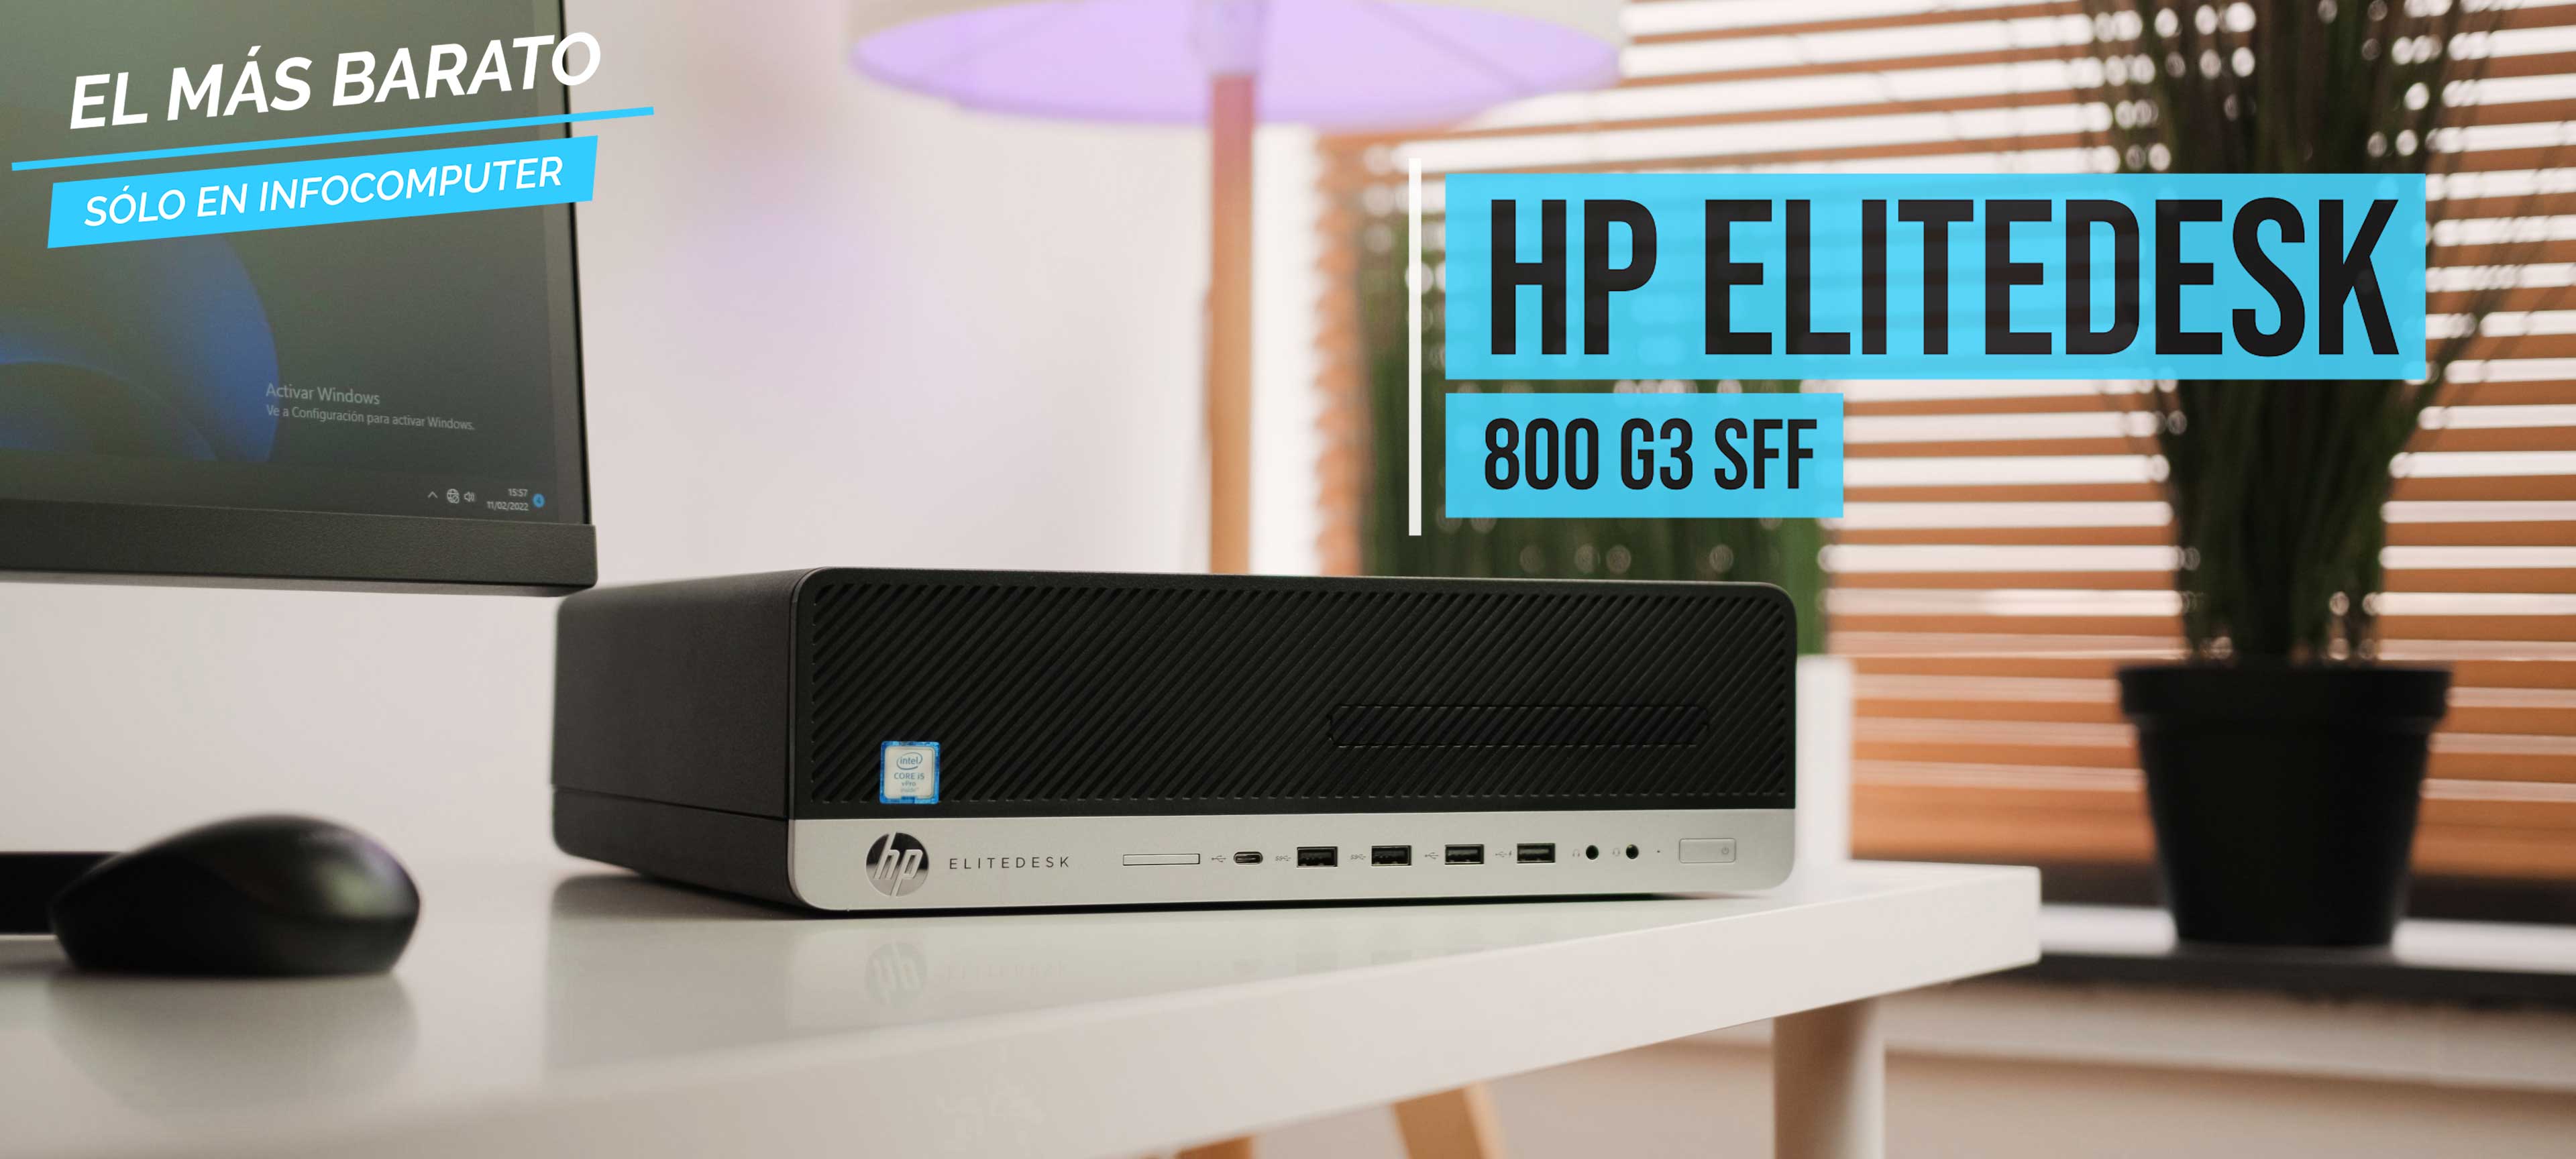 HP EliteDesk 800 G3 SFF | Ordenador Barato HP